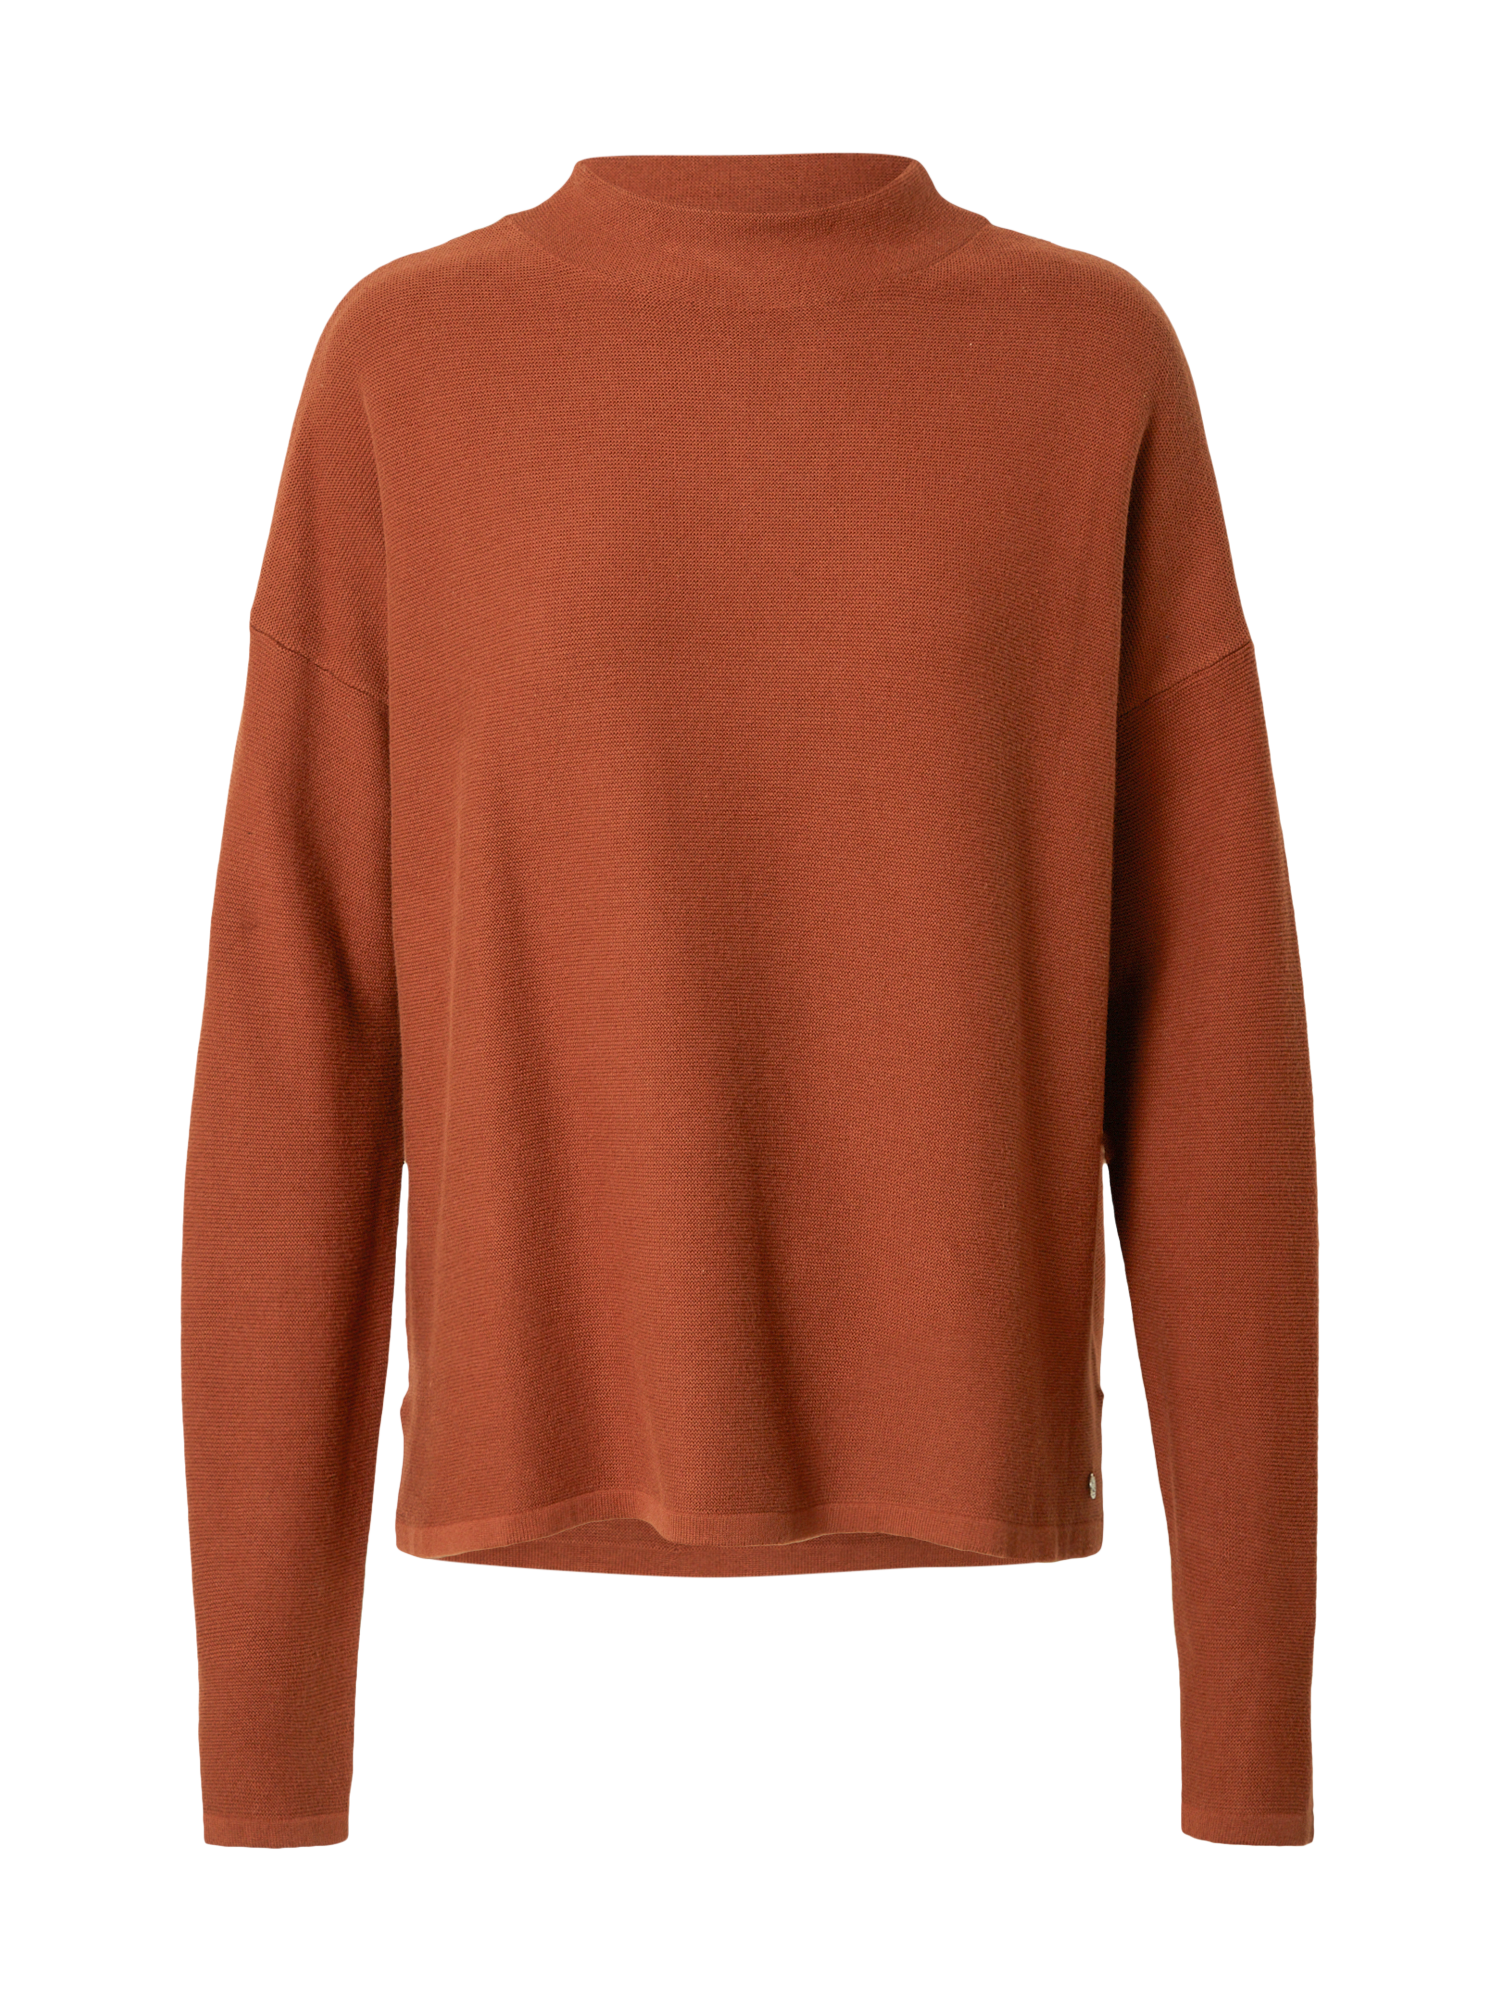 KzUex Kobiety TOM TAILOR DENIM Sweter w kolorze Rdzawobrązowym 